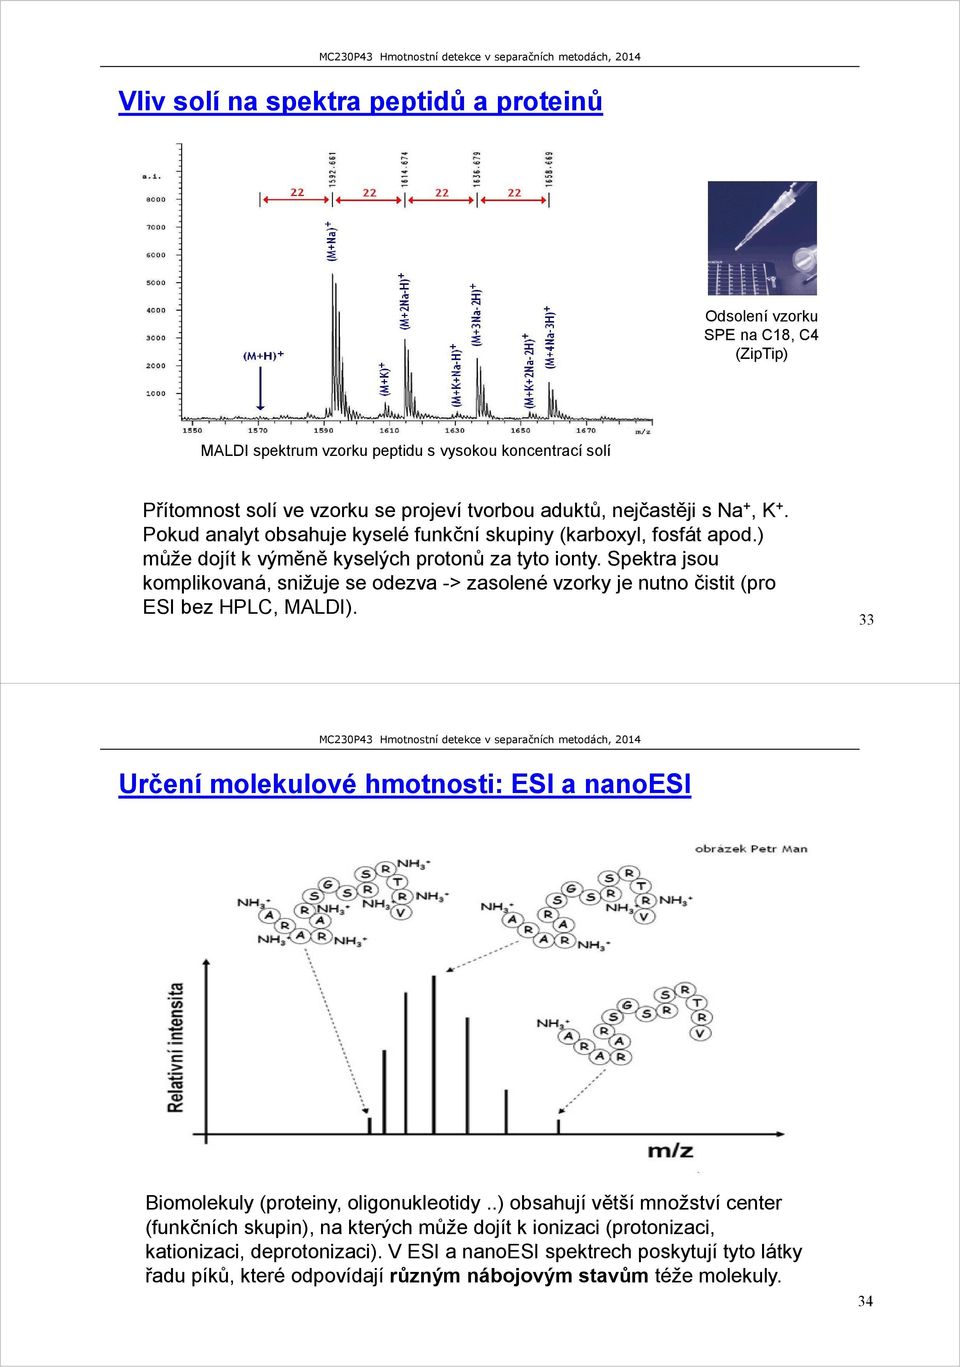 Spektra jsou komplikovaná, snižuje se odezva -> zasolené vzorky je nutno čistit (pro ESI bez HPLC, MALDI). 33 Určení molekulové hmotnosti: ESI a nanoesi Biomolekuly (proteiny, oligonukleotidy.